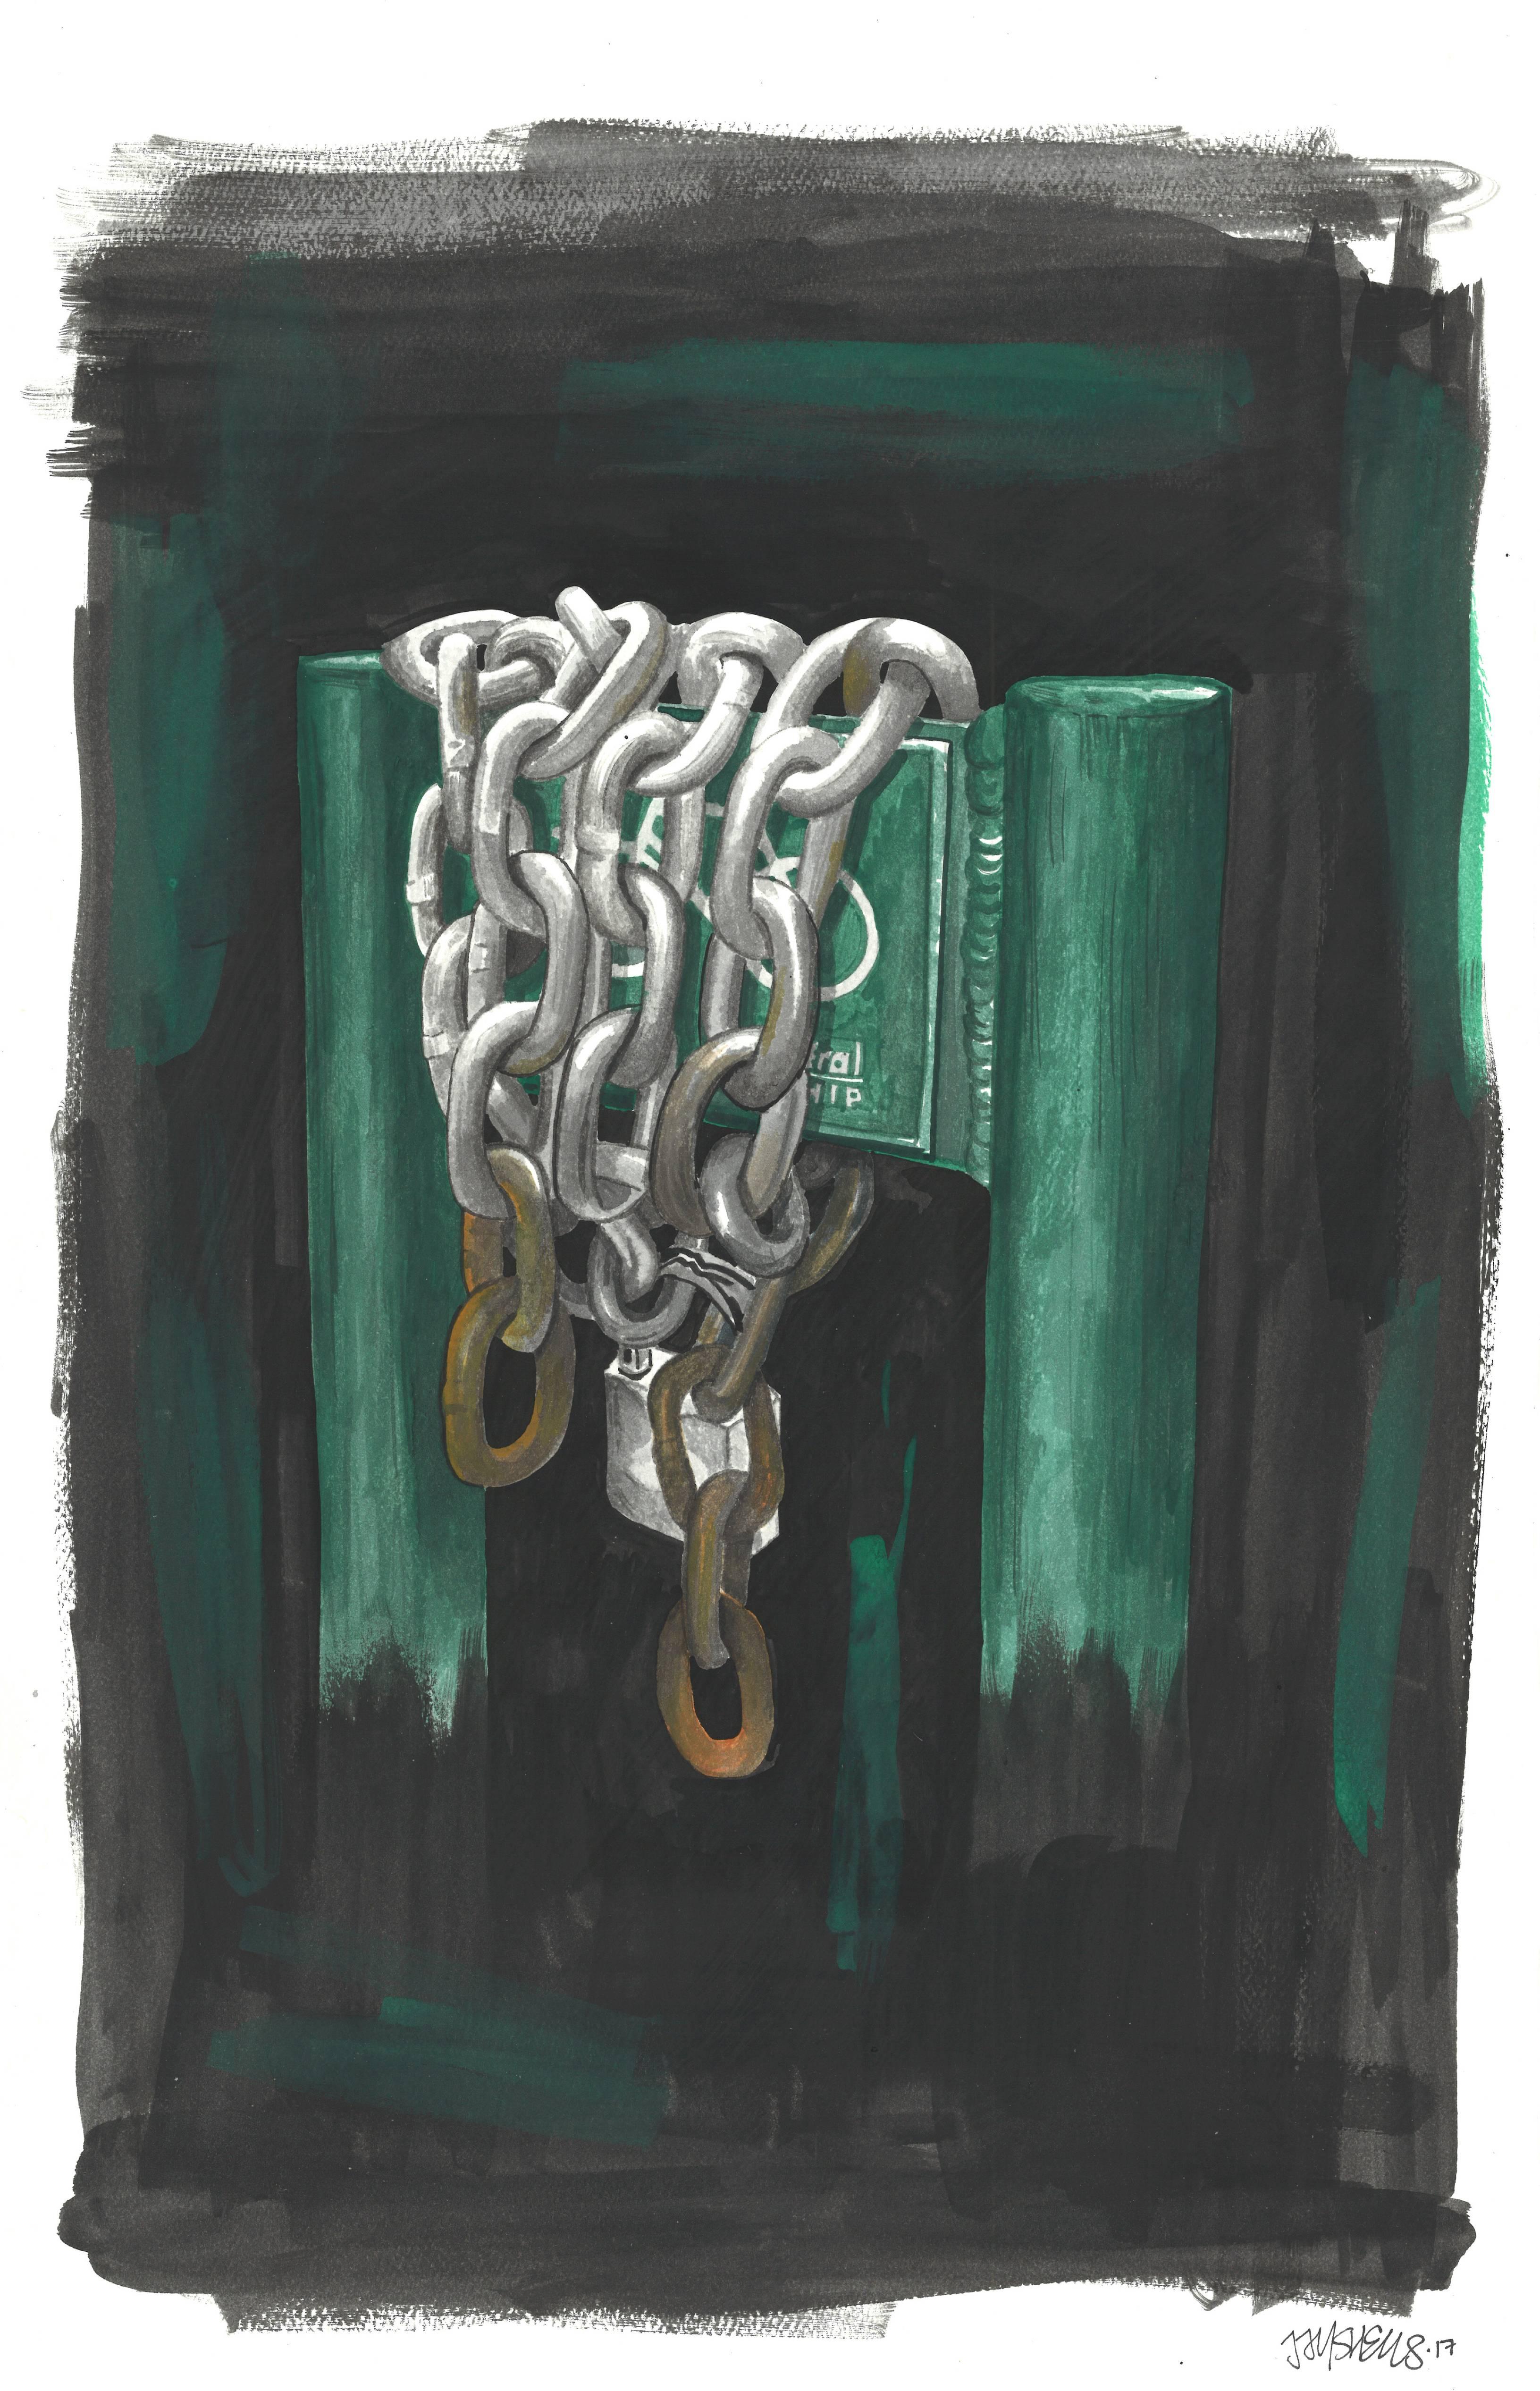 Chains - Art by Jason Shelowitz